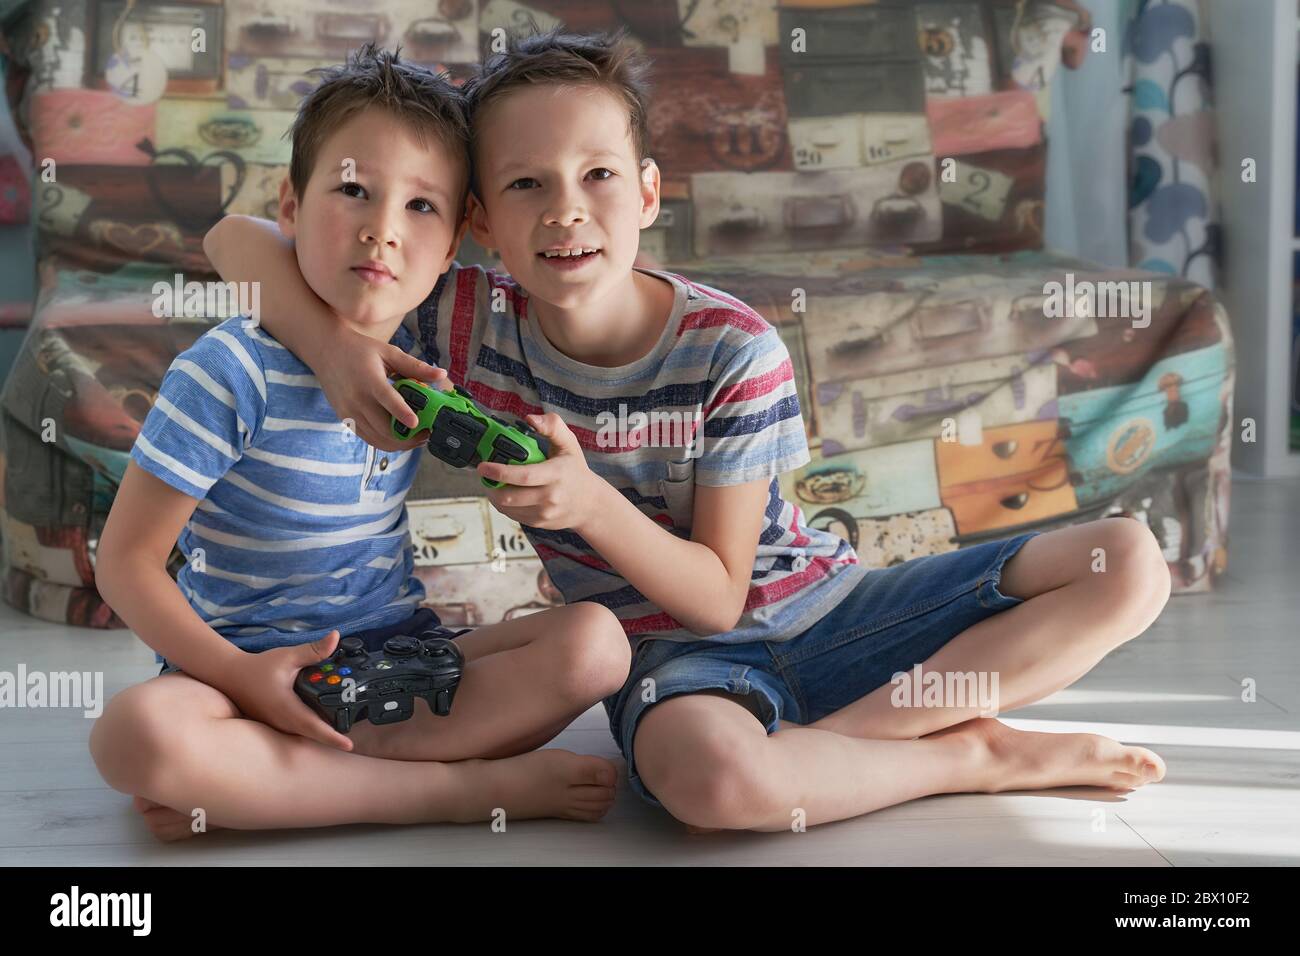 due ragazzini divertenti che hanno un sacco di divertimento con il video giochi Foto Stock